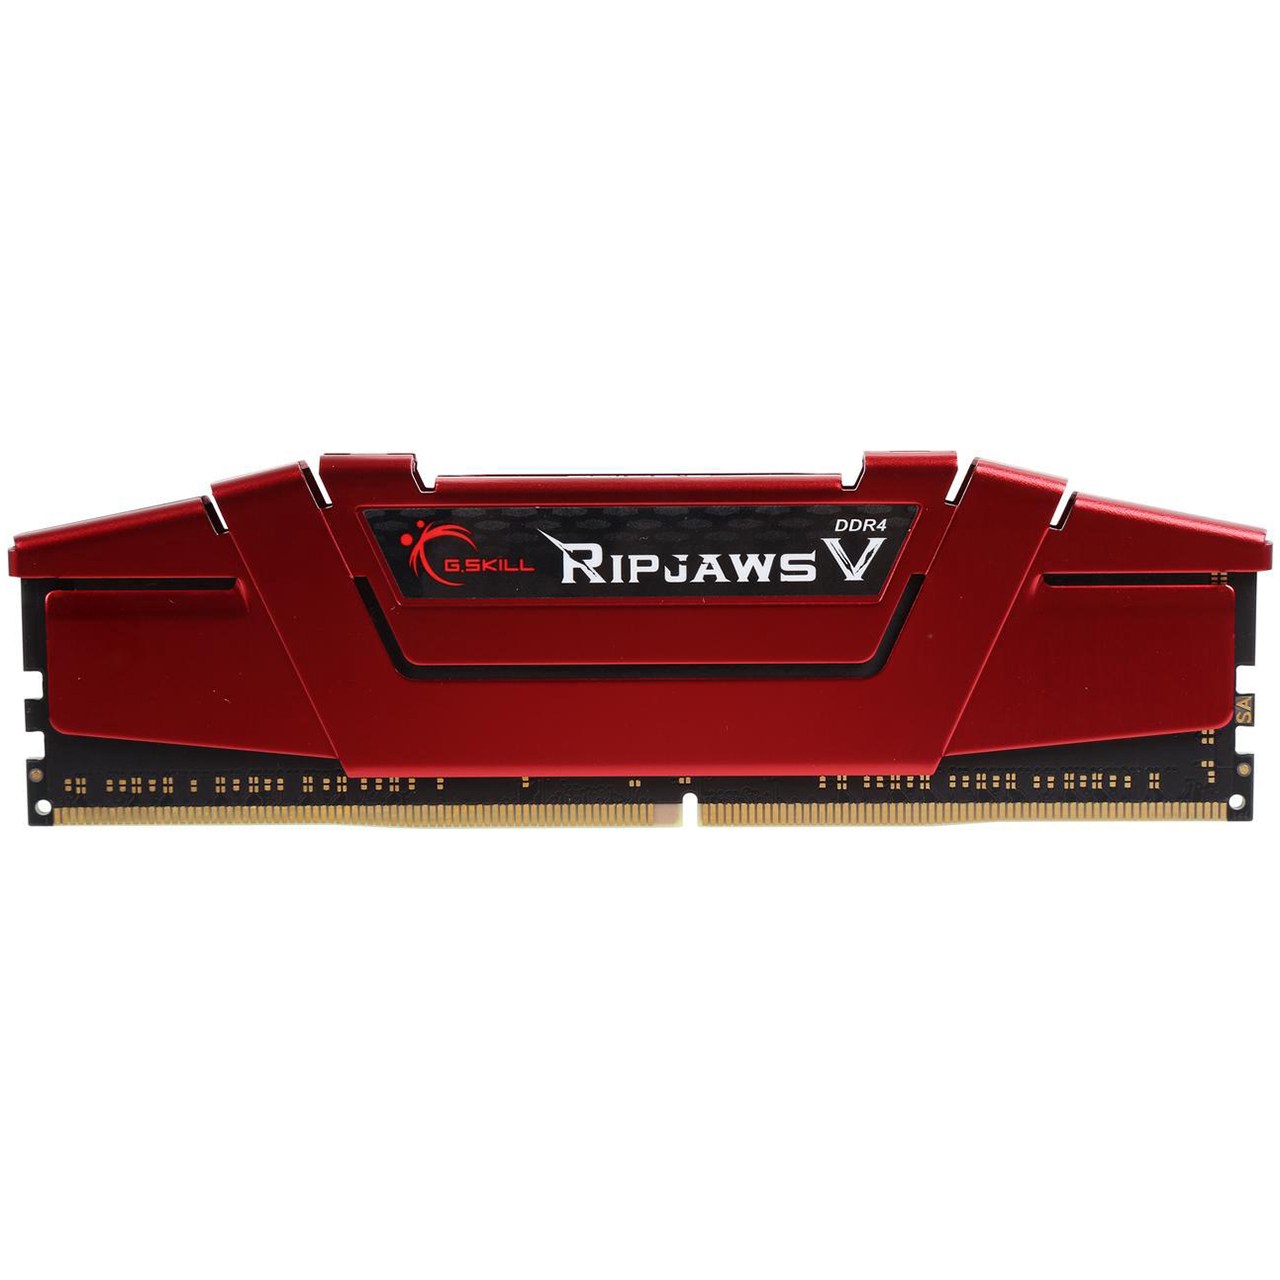 رم دسکتاپ DDR4 تک کاناله 3000 مگاهرتز CL15 جی اسکیل مدل RIPJAWS V ظرفیت 16 گیگابایت